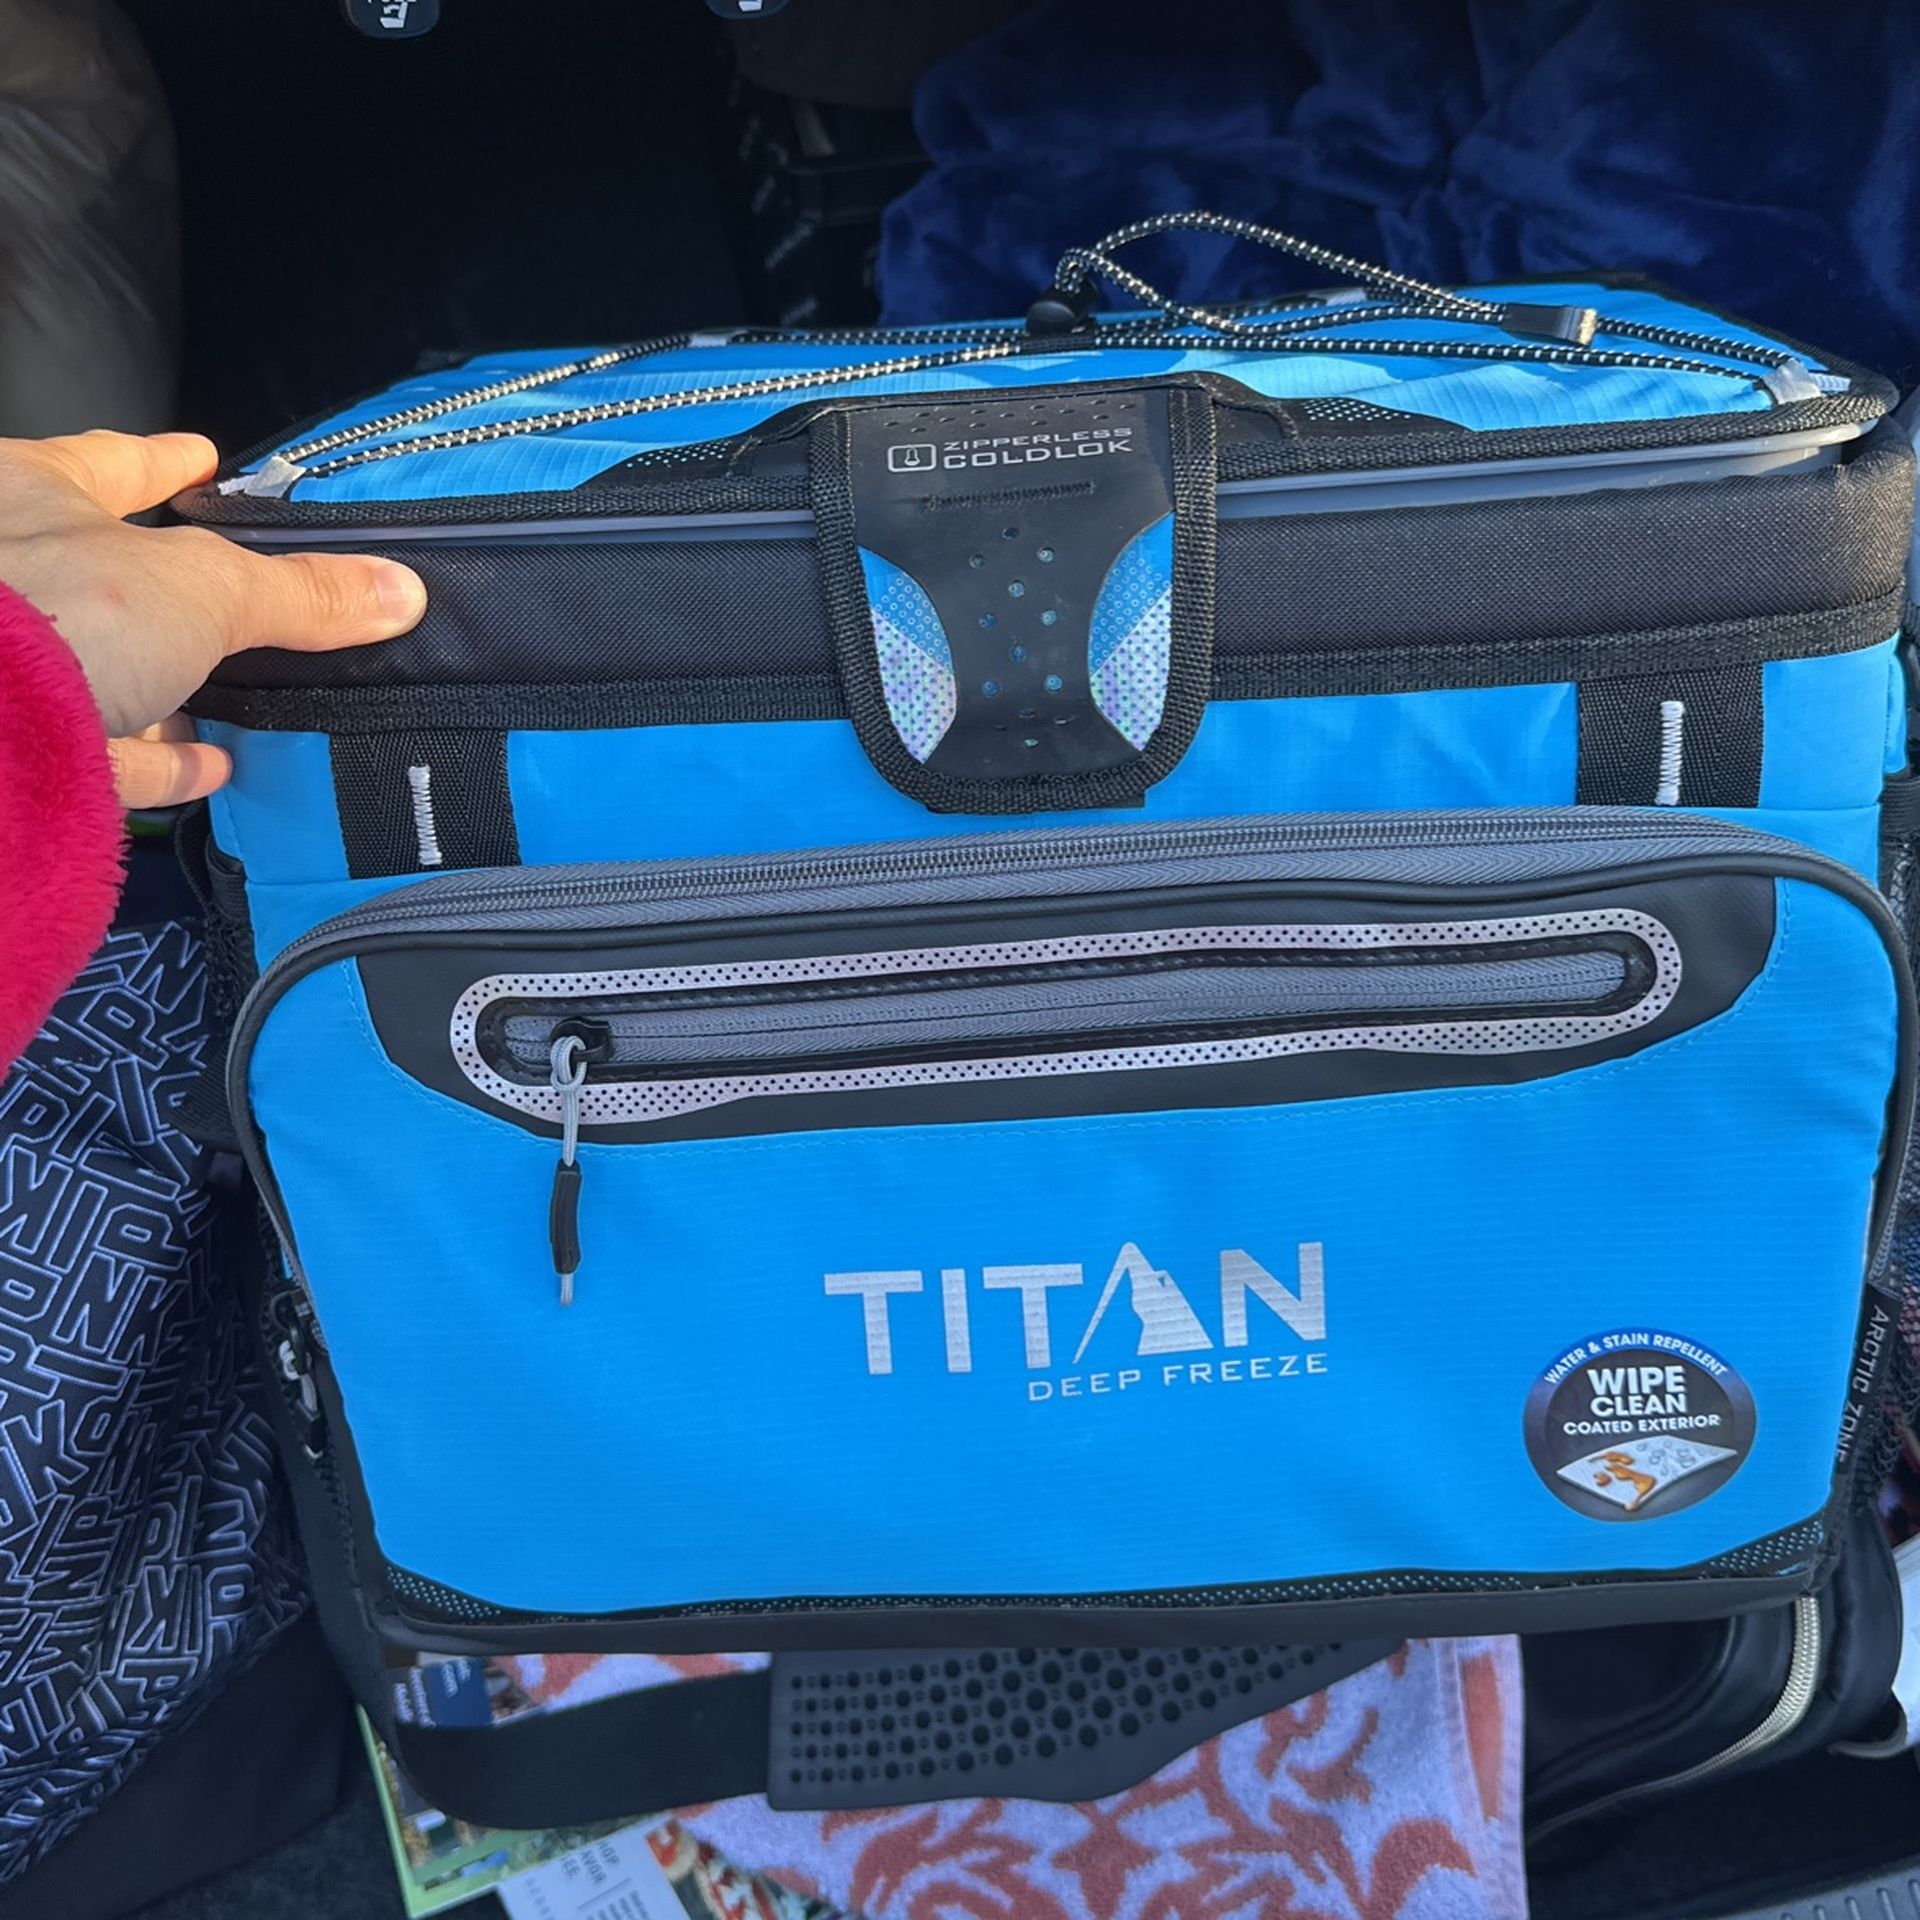 Titan Deep Freezer Cooler